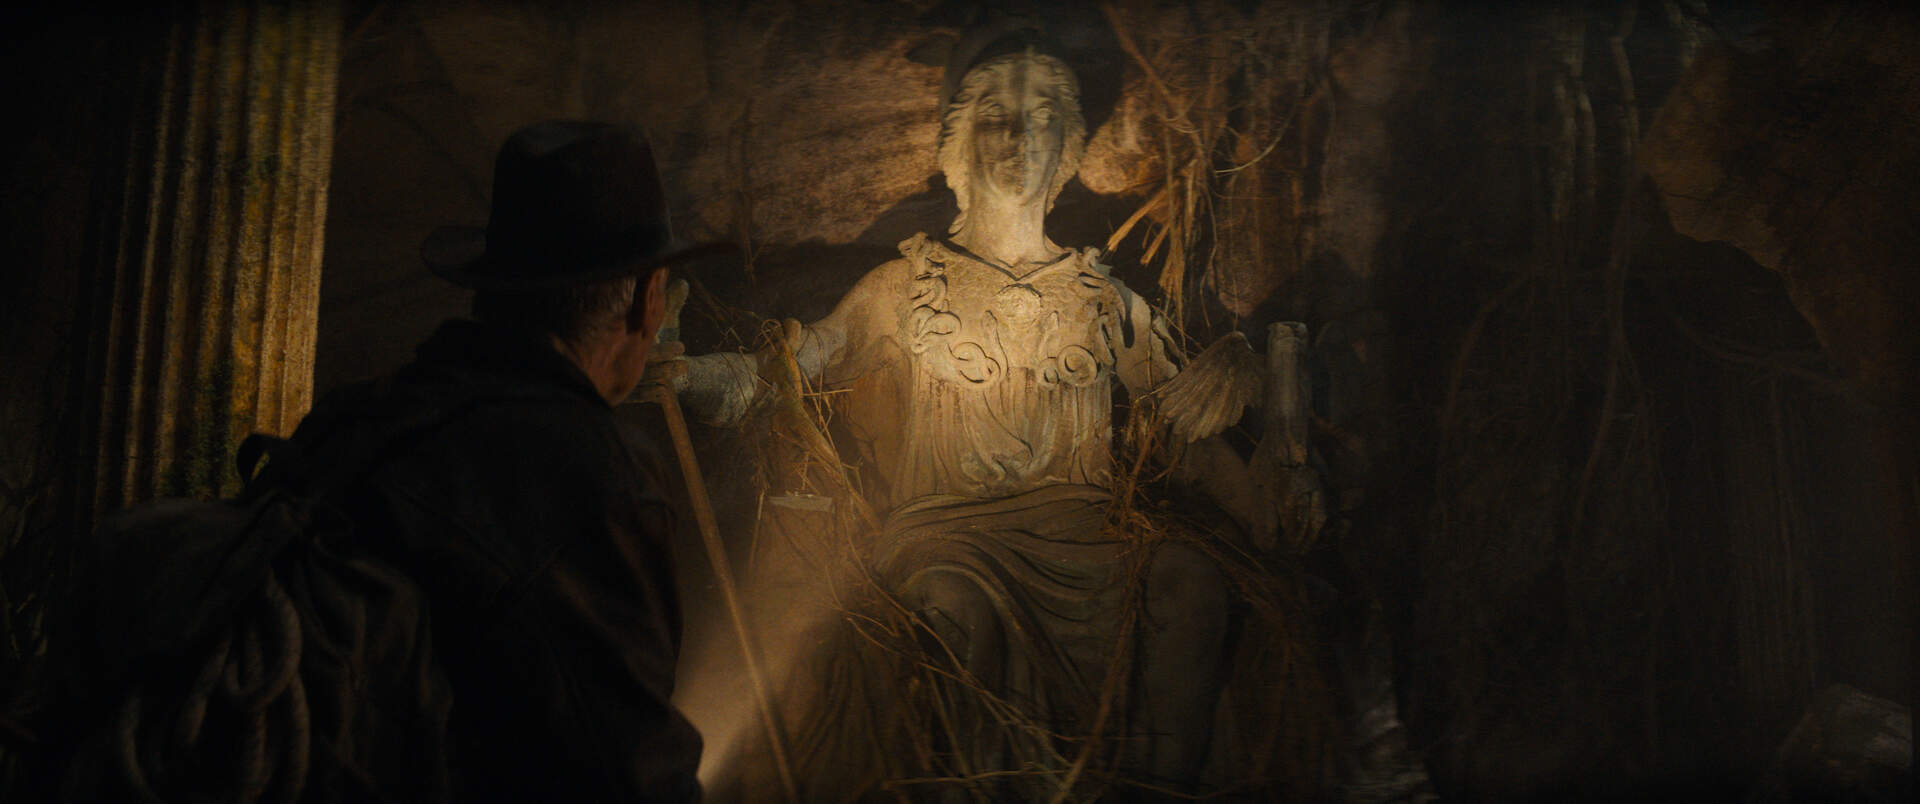 Indiana Jones und das Rad des Schicksals - Szenenbild 4 von 28